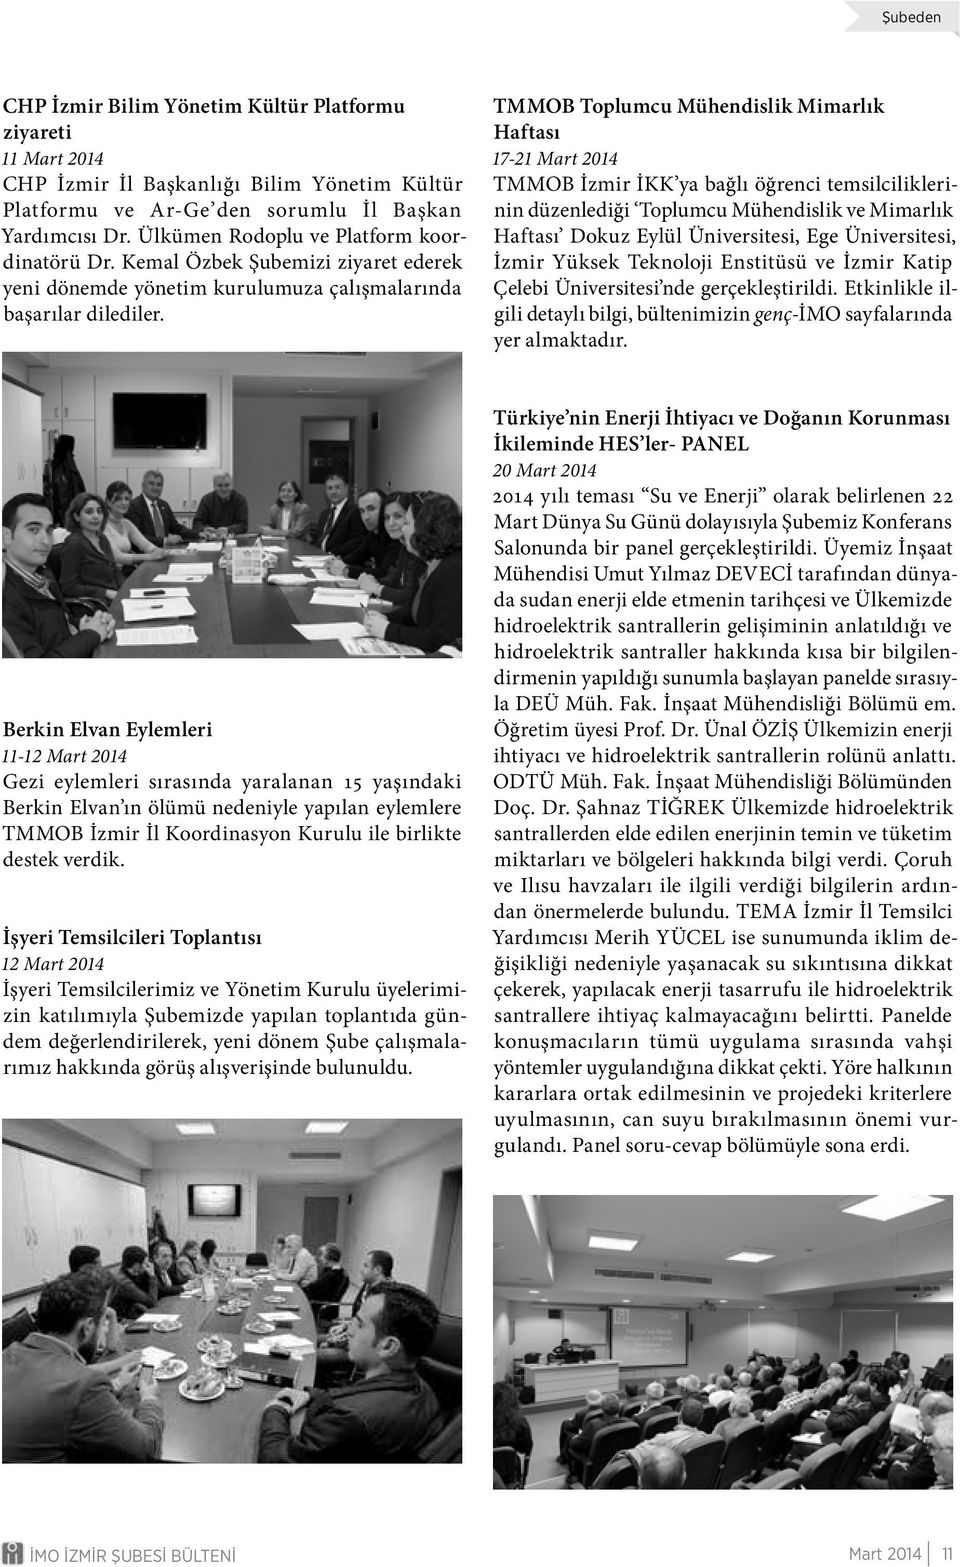 TMMOB Toplumcu Mühendislik Mimarlık Haftası 17-21 Mart 2014 TMMOB İzmir İKK ya bağlı öğrenci temsilciliklerinin düzenlediği Toplumcu Mühendislik ve Mimarlık Haftası Dokuz Eylül Üniversitesi, Ege